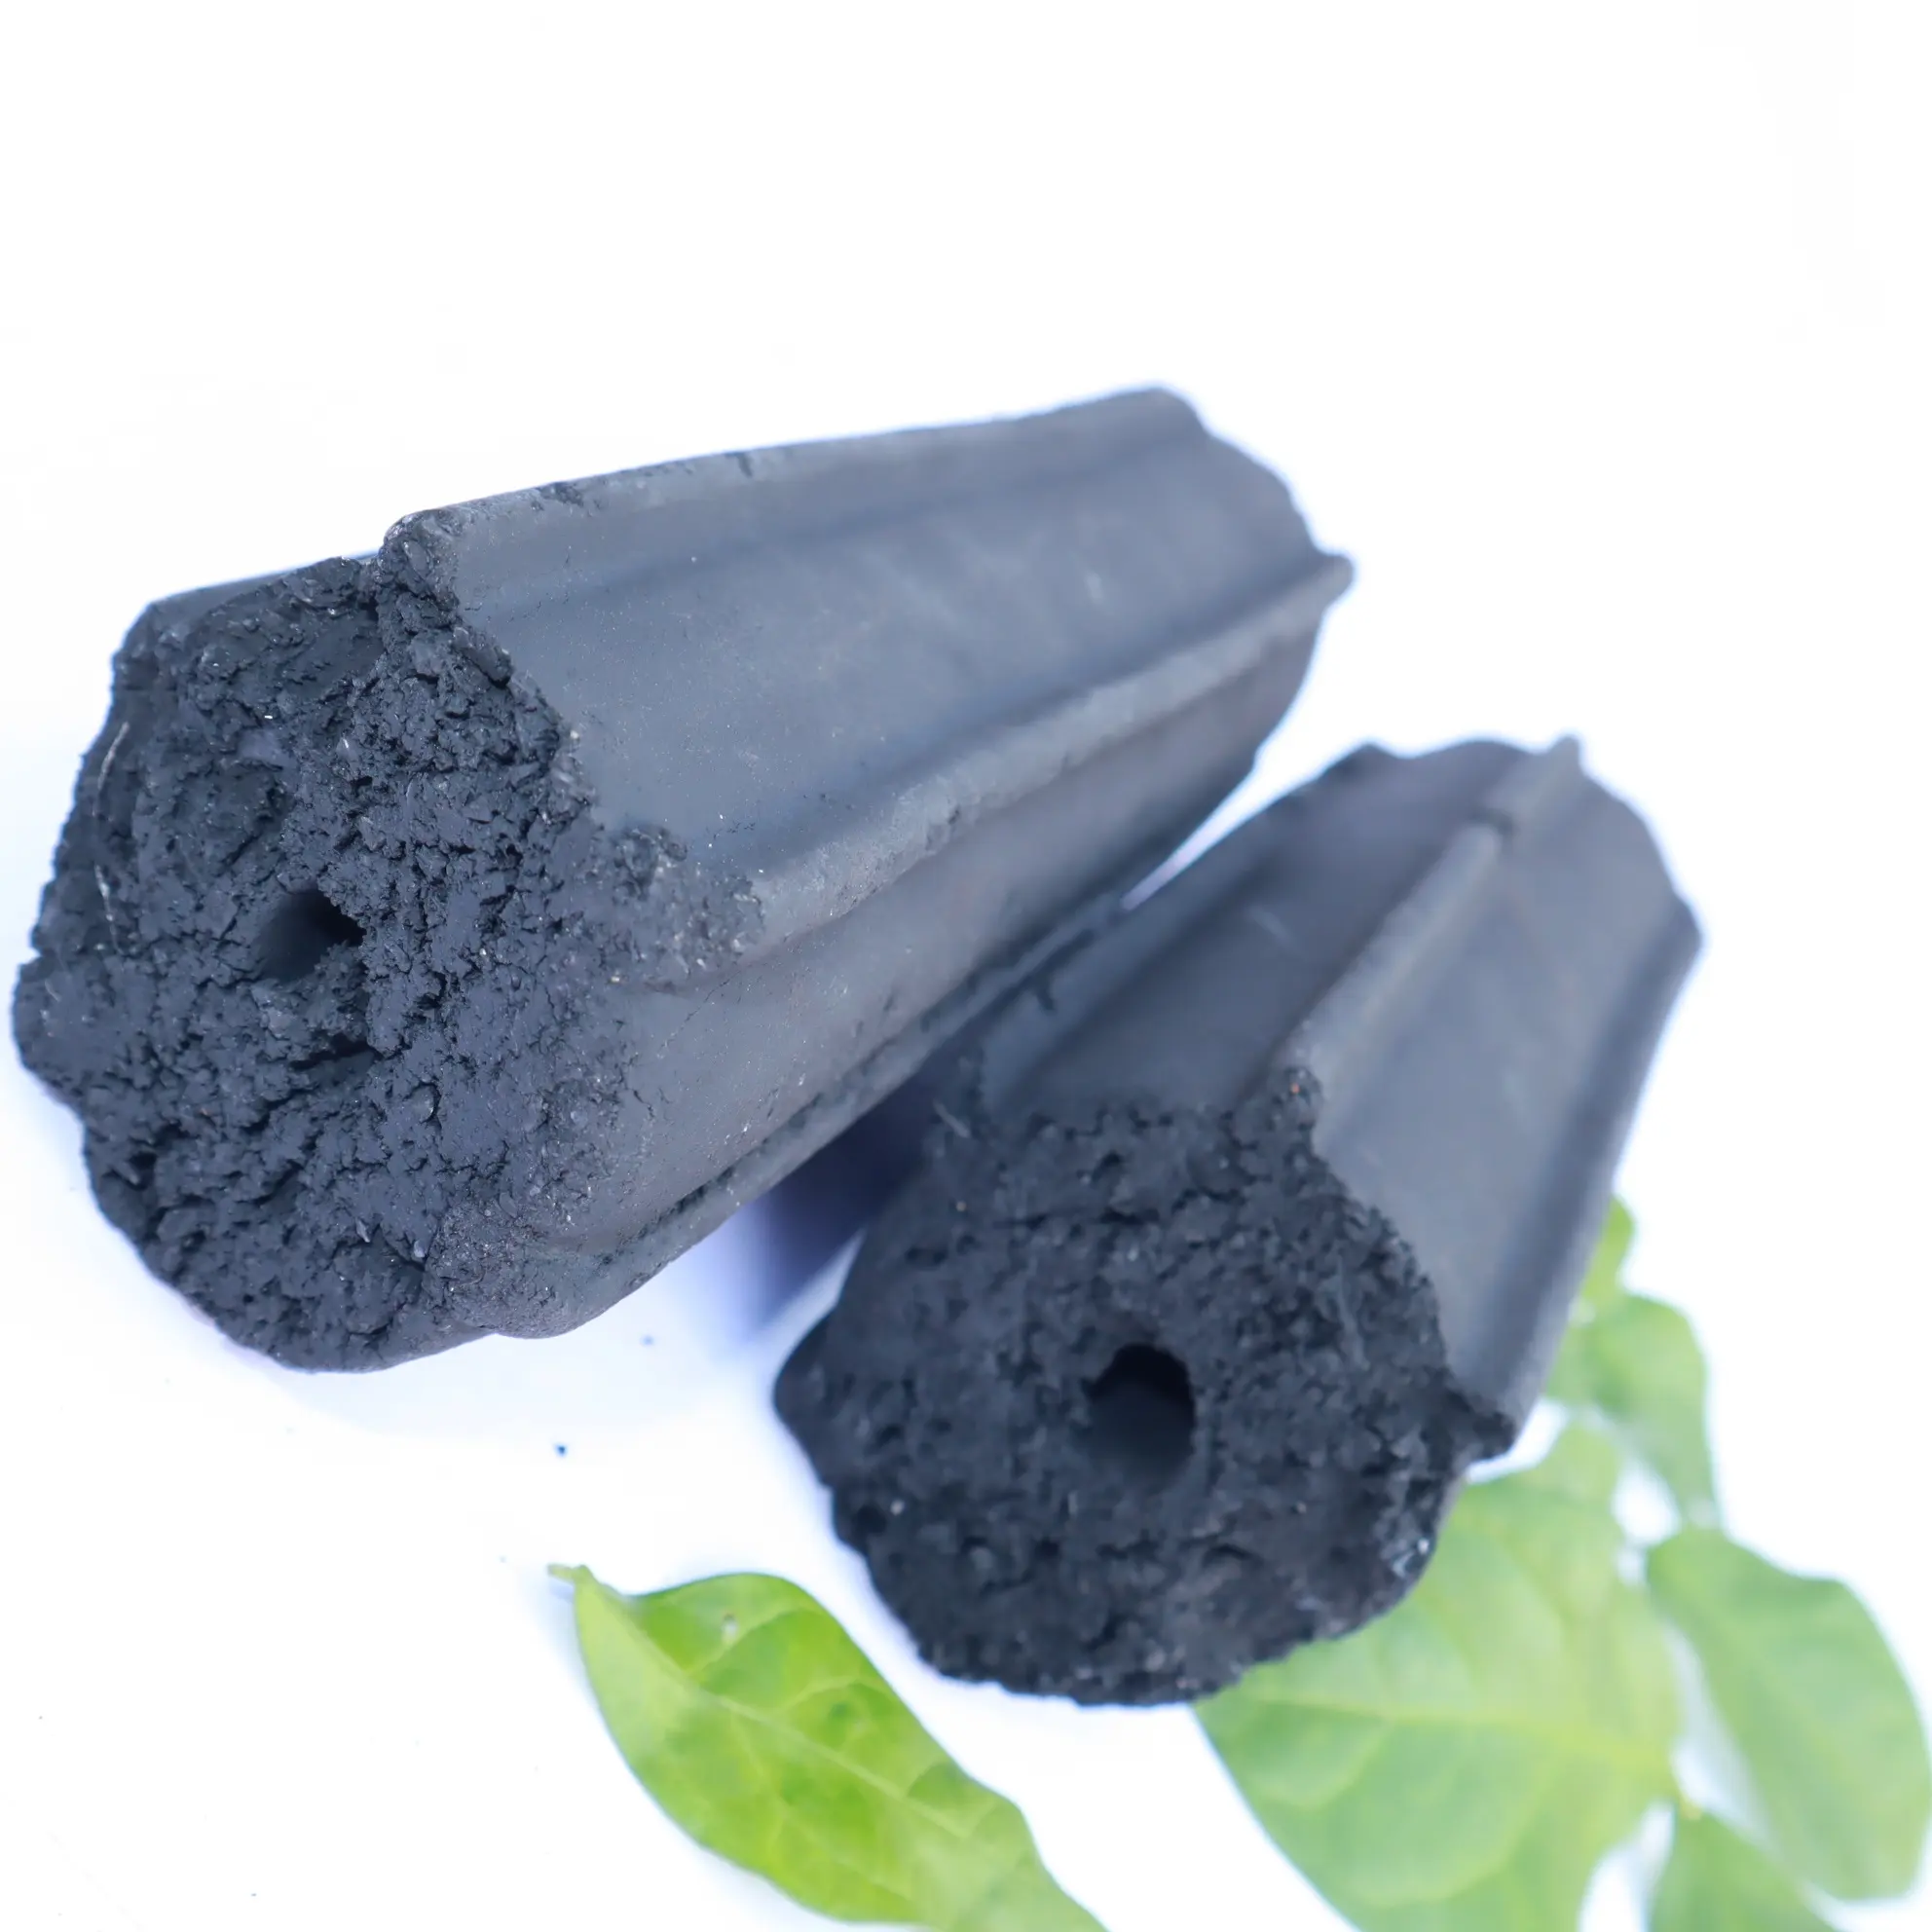 Vende quente 100% fumo menos briquetes do carvão vegetal do escudo do coco para churrascos internos e exteriores